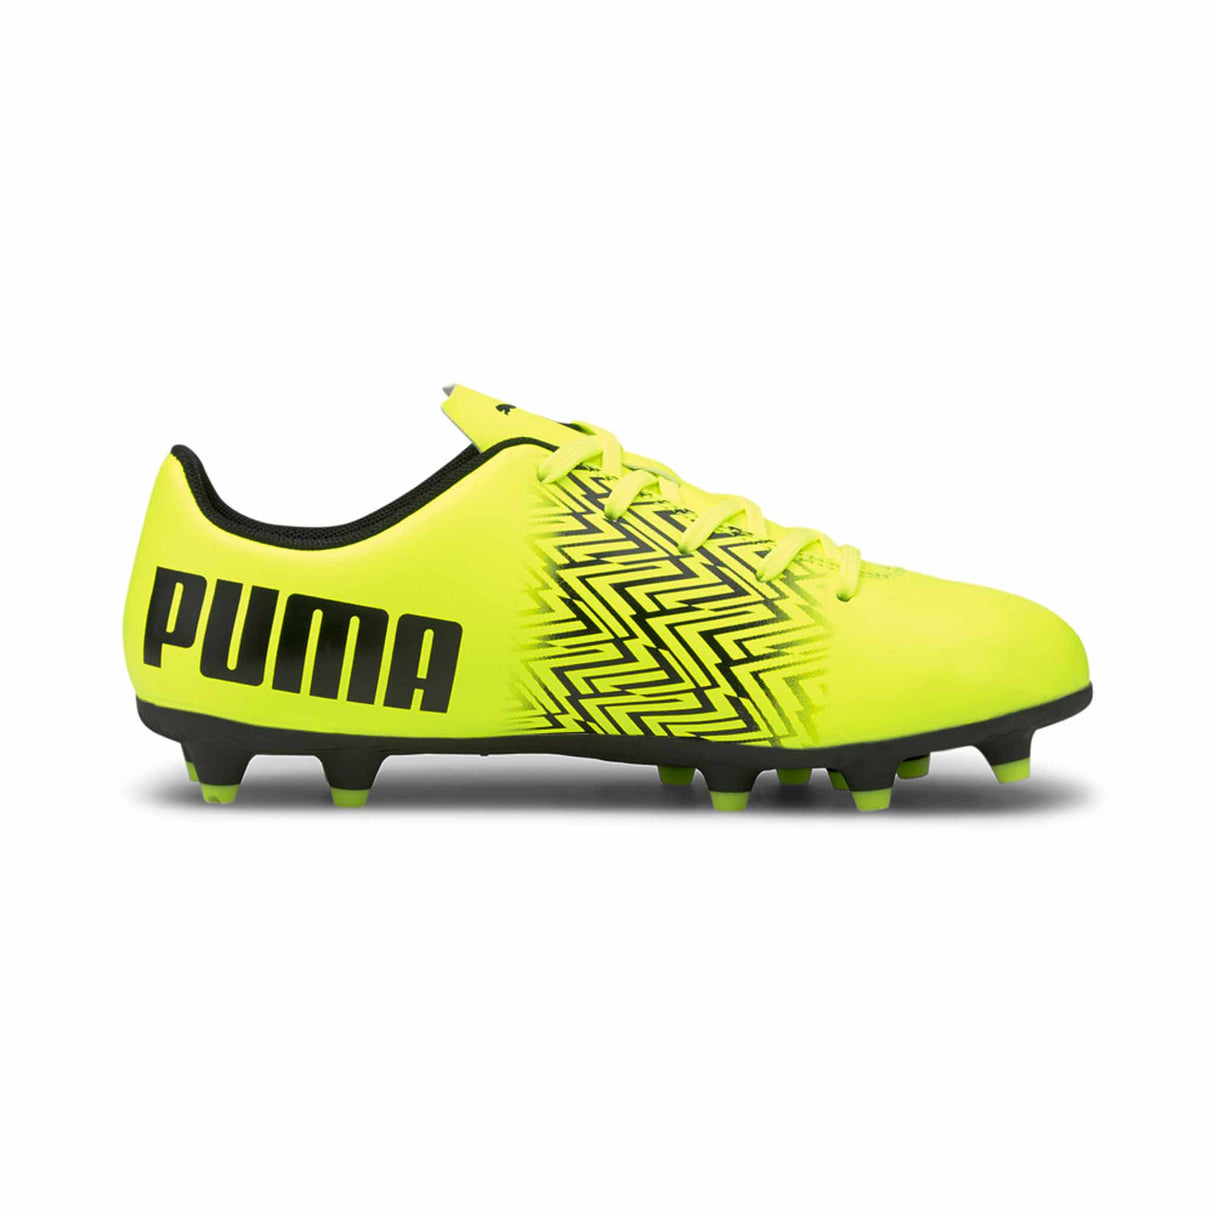 Puma Tacto FG/AG Junior chaussures de soccer enfant Jaune / Noir côté intérieur